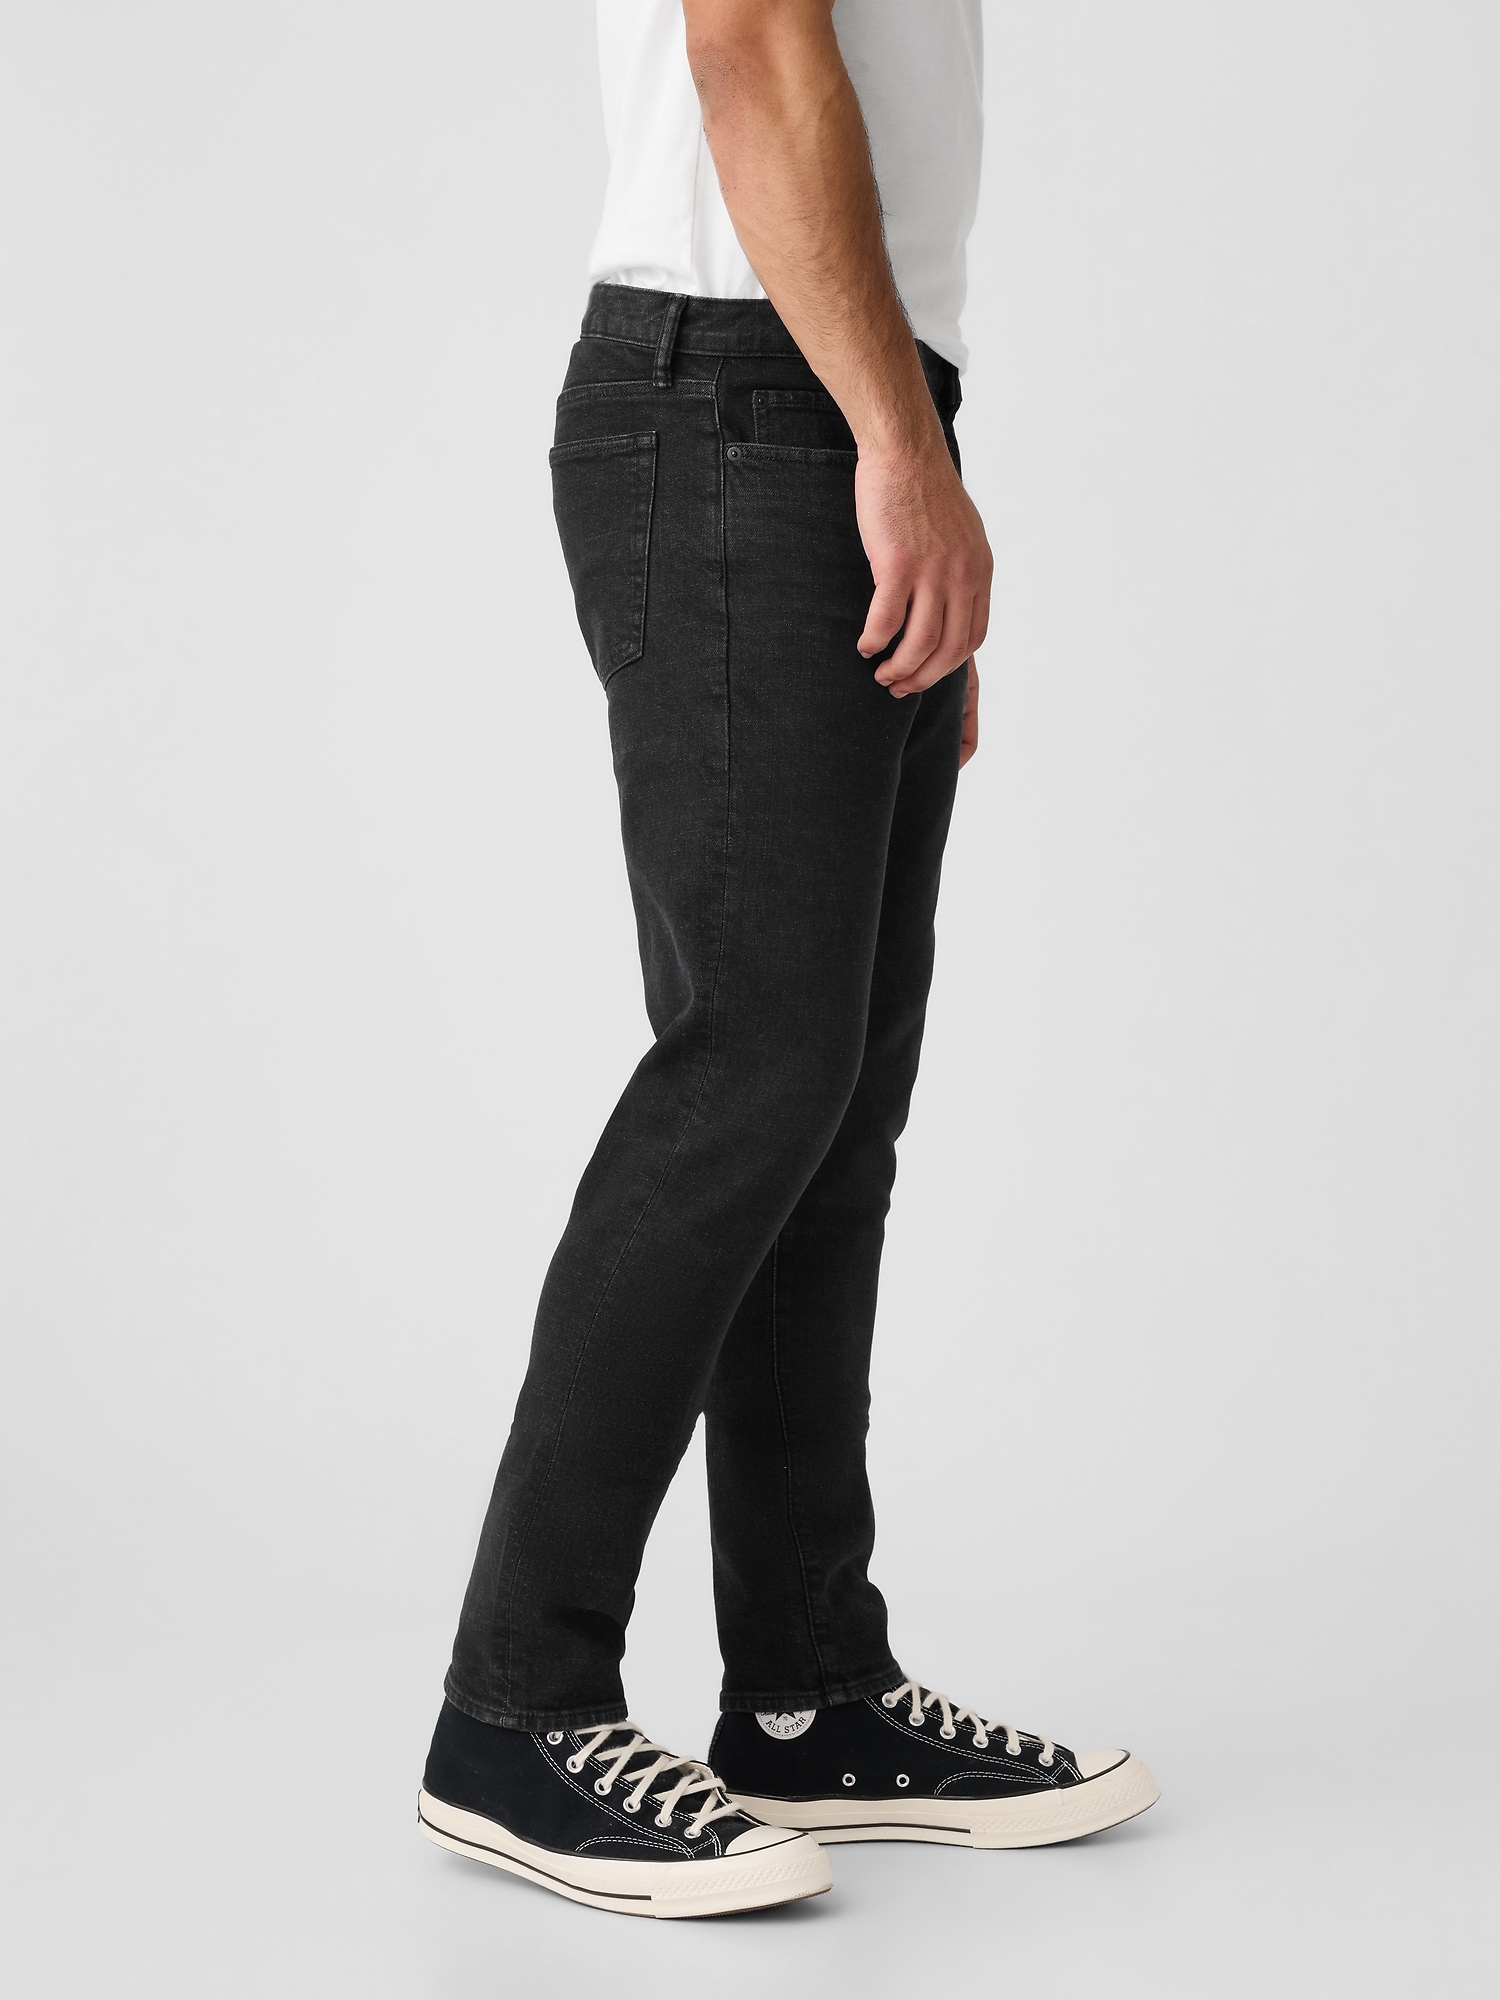 Sleek & Trim: Men's Slim Fit Jeans